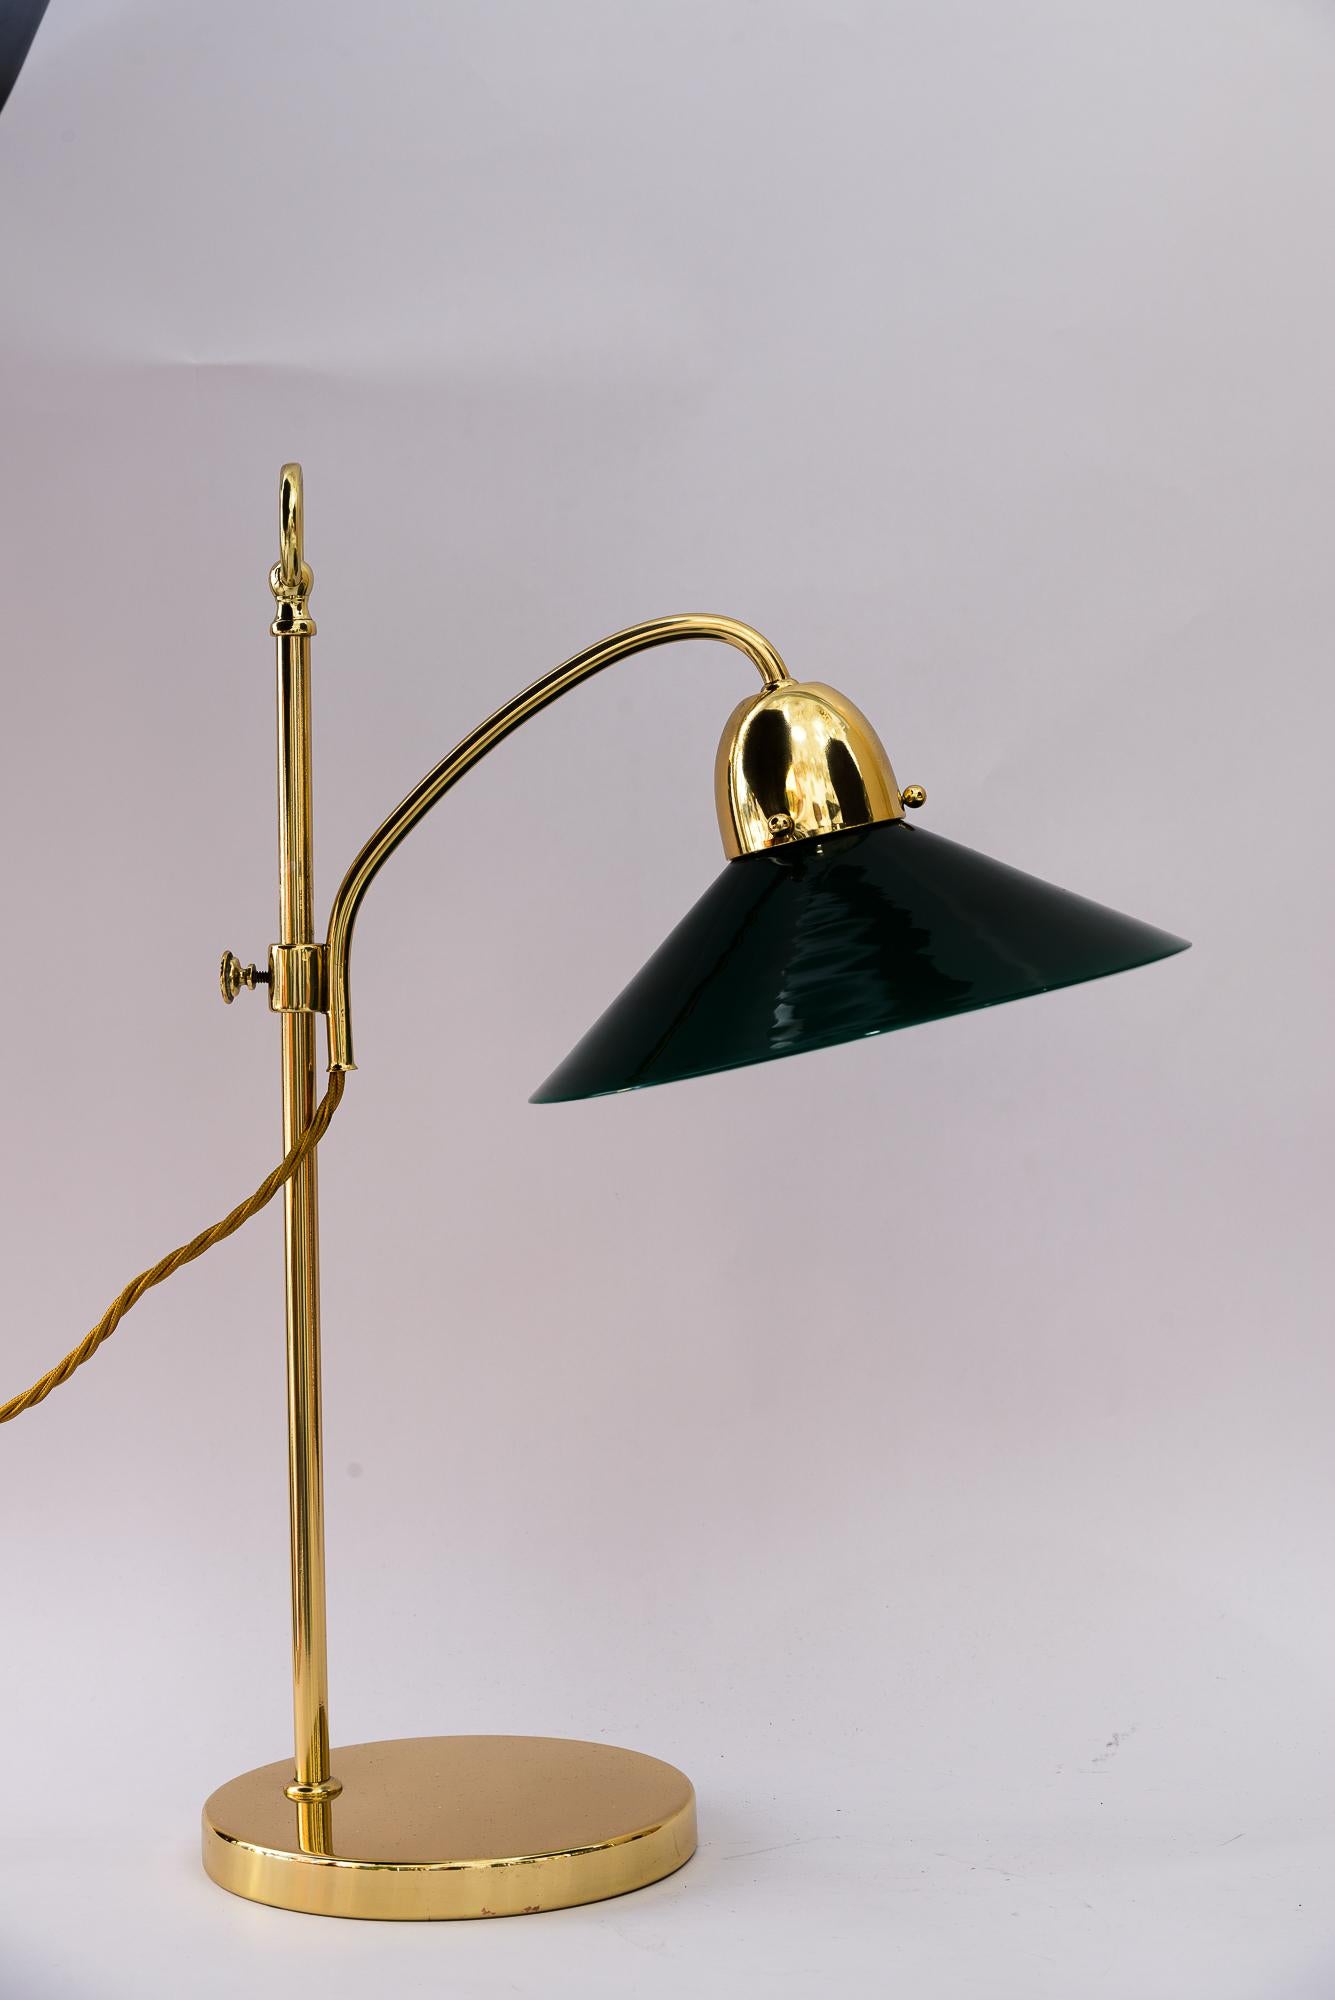 Seltene Art Deco höhenverstellbare Kondor Tischlampe mit original Glasschirm 1920er Jahre
Messing poliert und emailliert
Original Opalglas-Schirm
